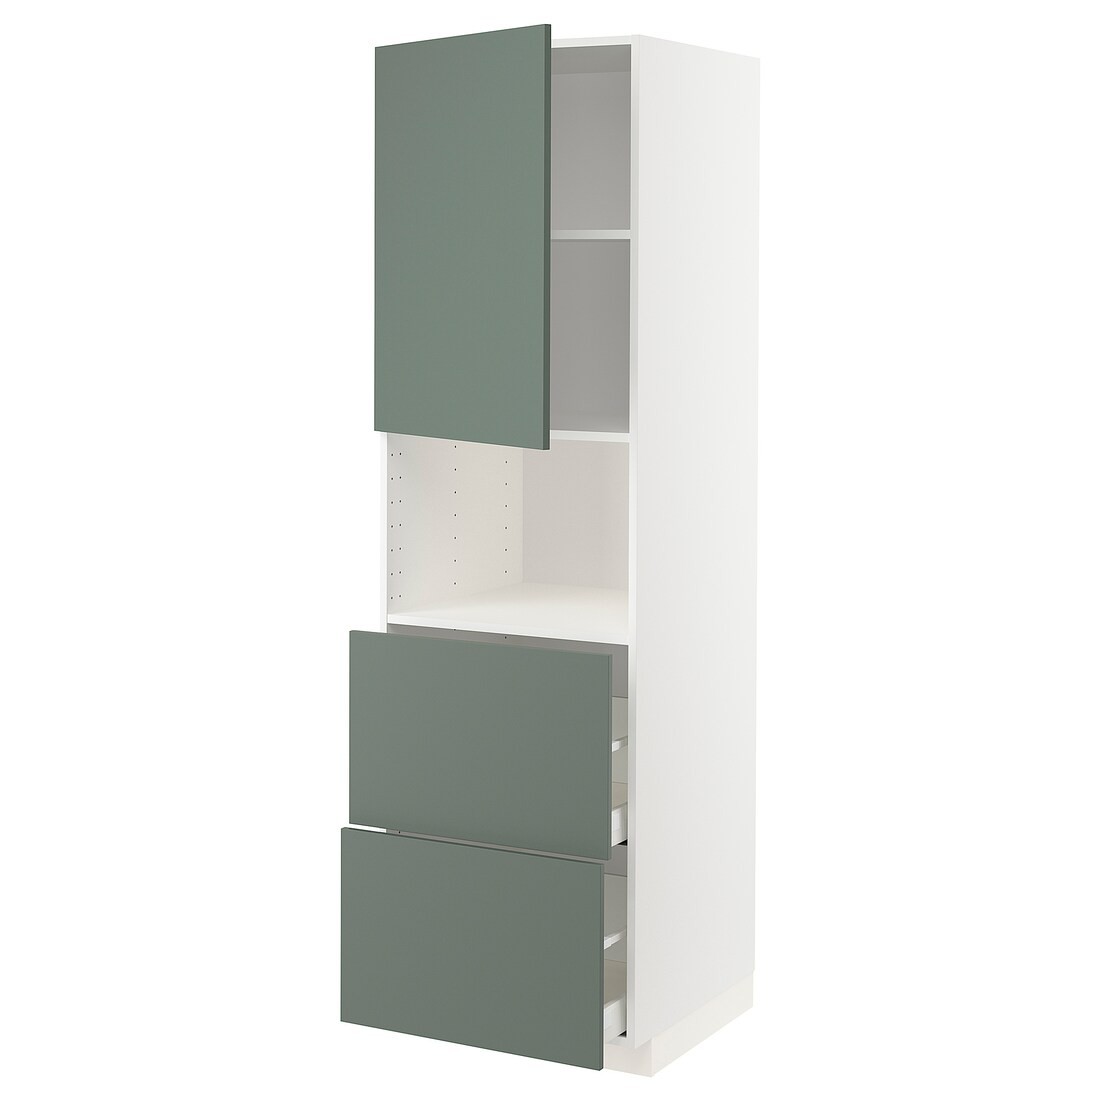 METOD МЕТОД / MAXIMERA МАКСИМЕРА Высокий шкаф для микроволновки с дверями / 2 ящика, белый / Bodarp серо-зеленый, 60x60x200 см